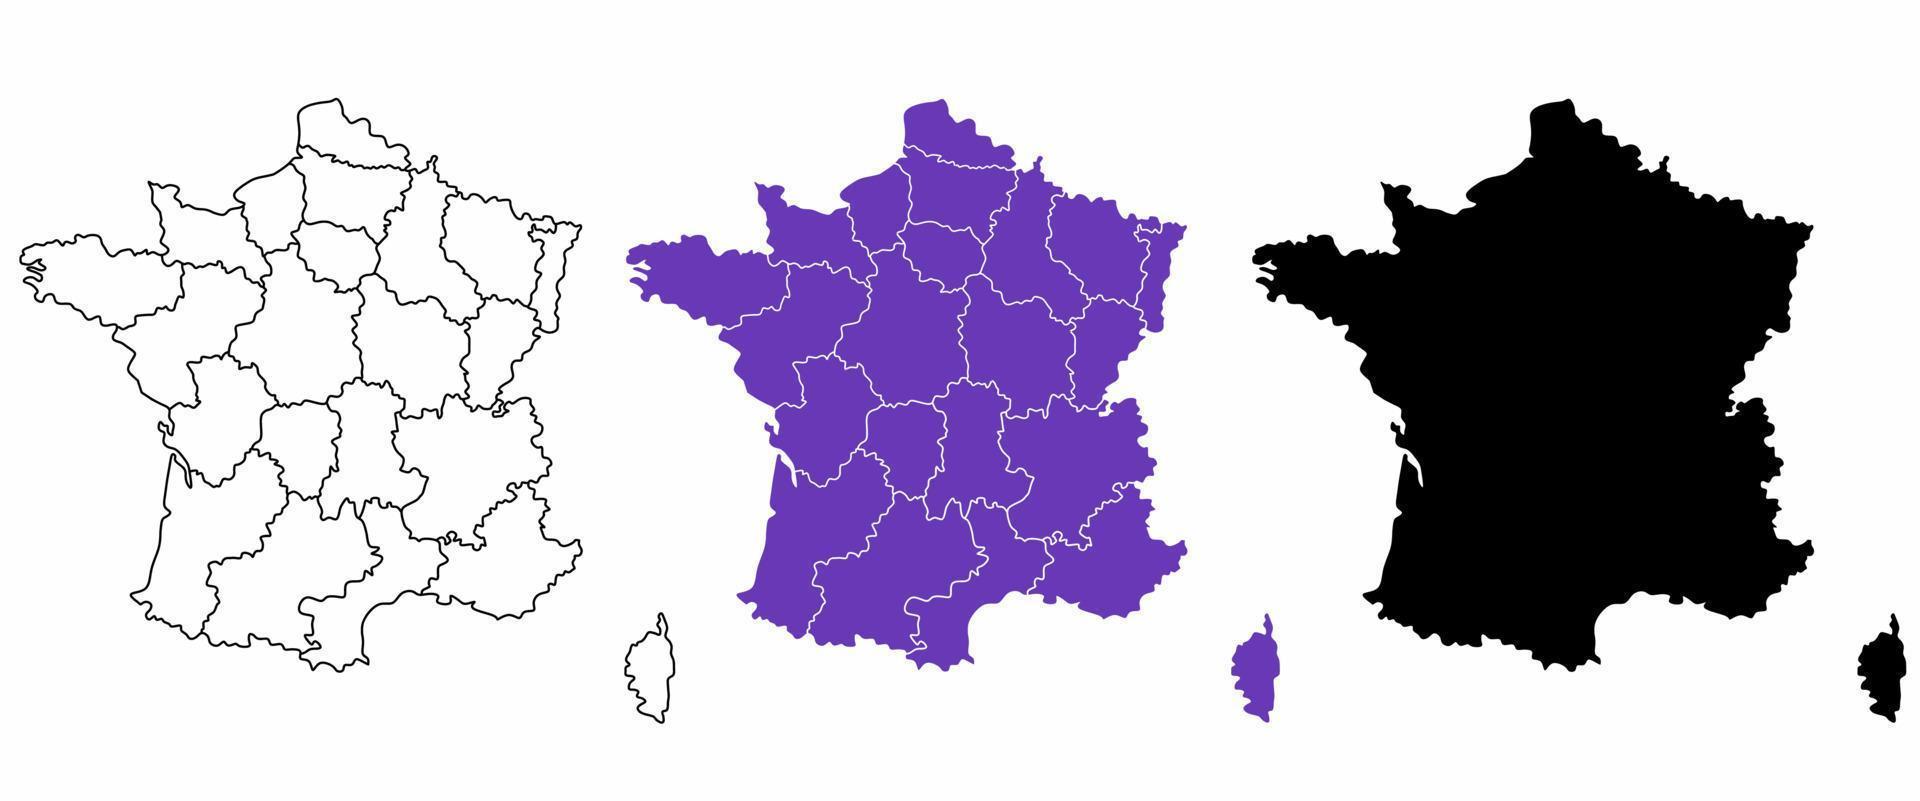 frankreich-kartensatz mit grenzen der regionen lokalisiert auf weißem hintergrund vektor